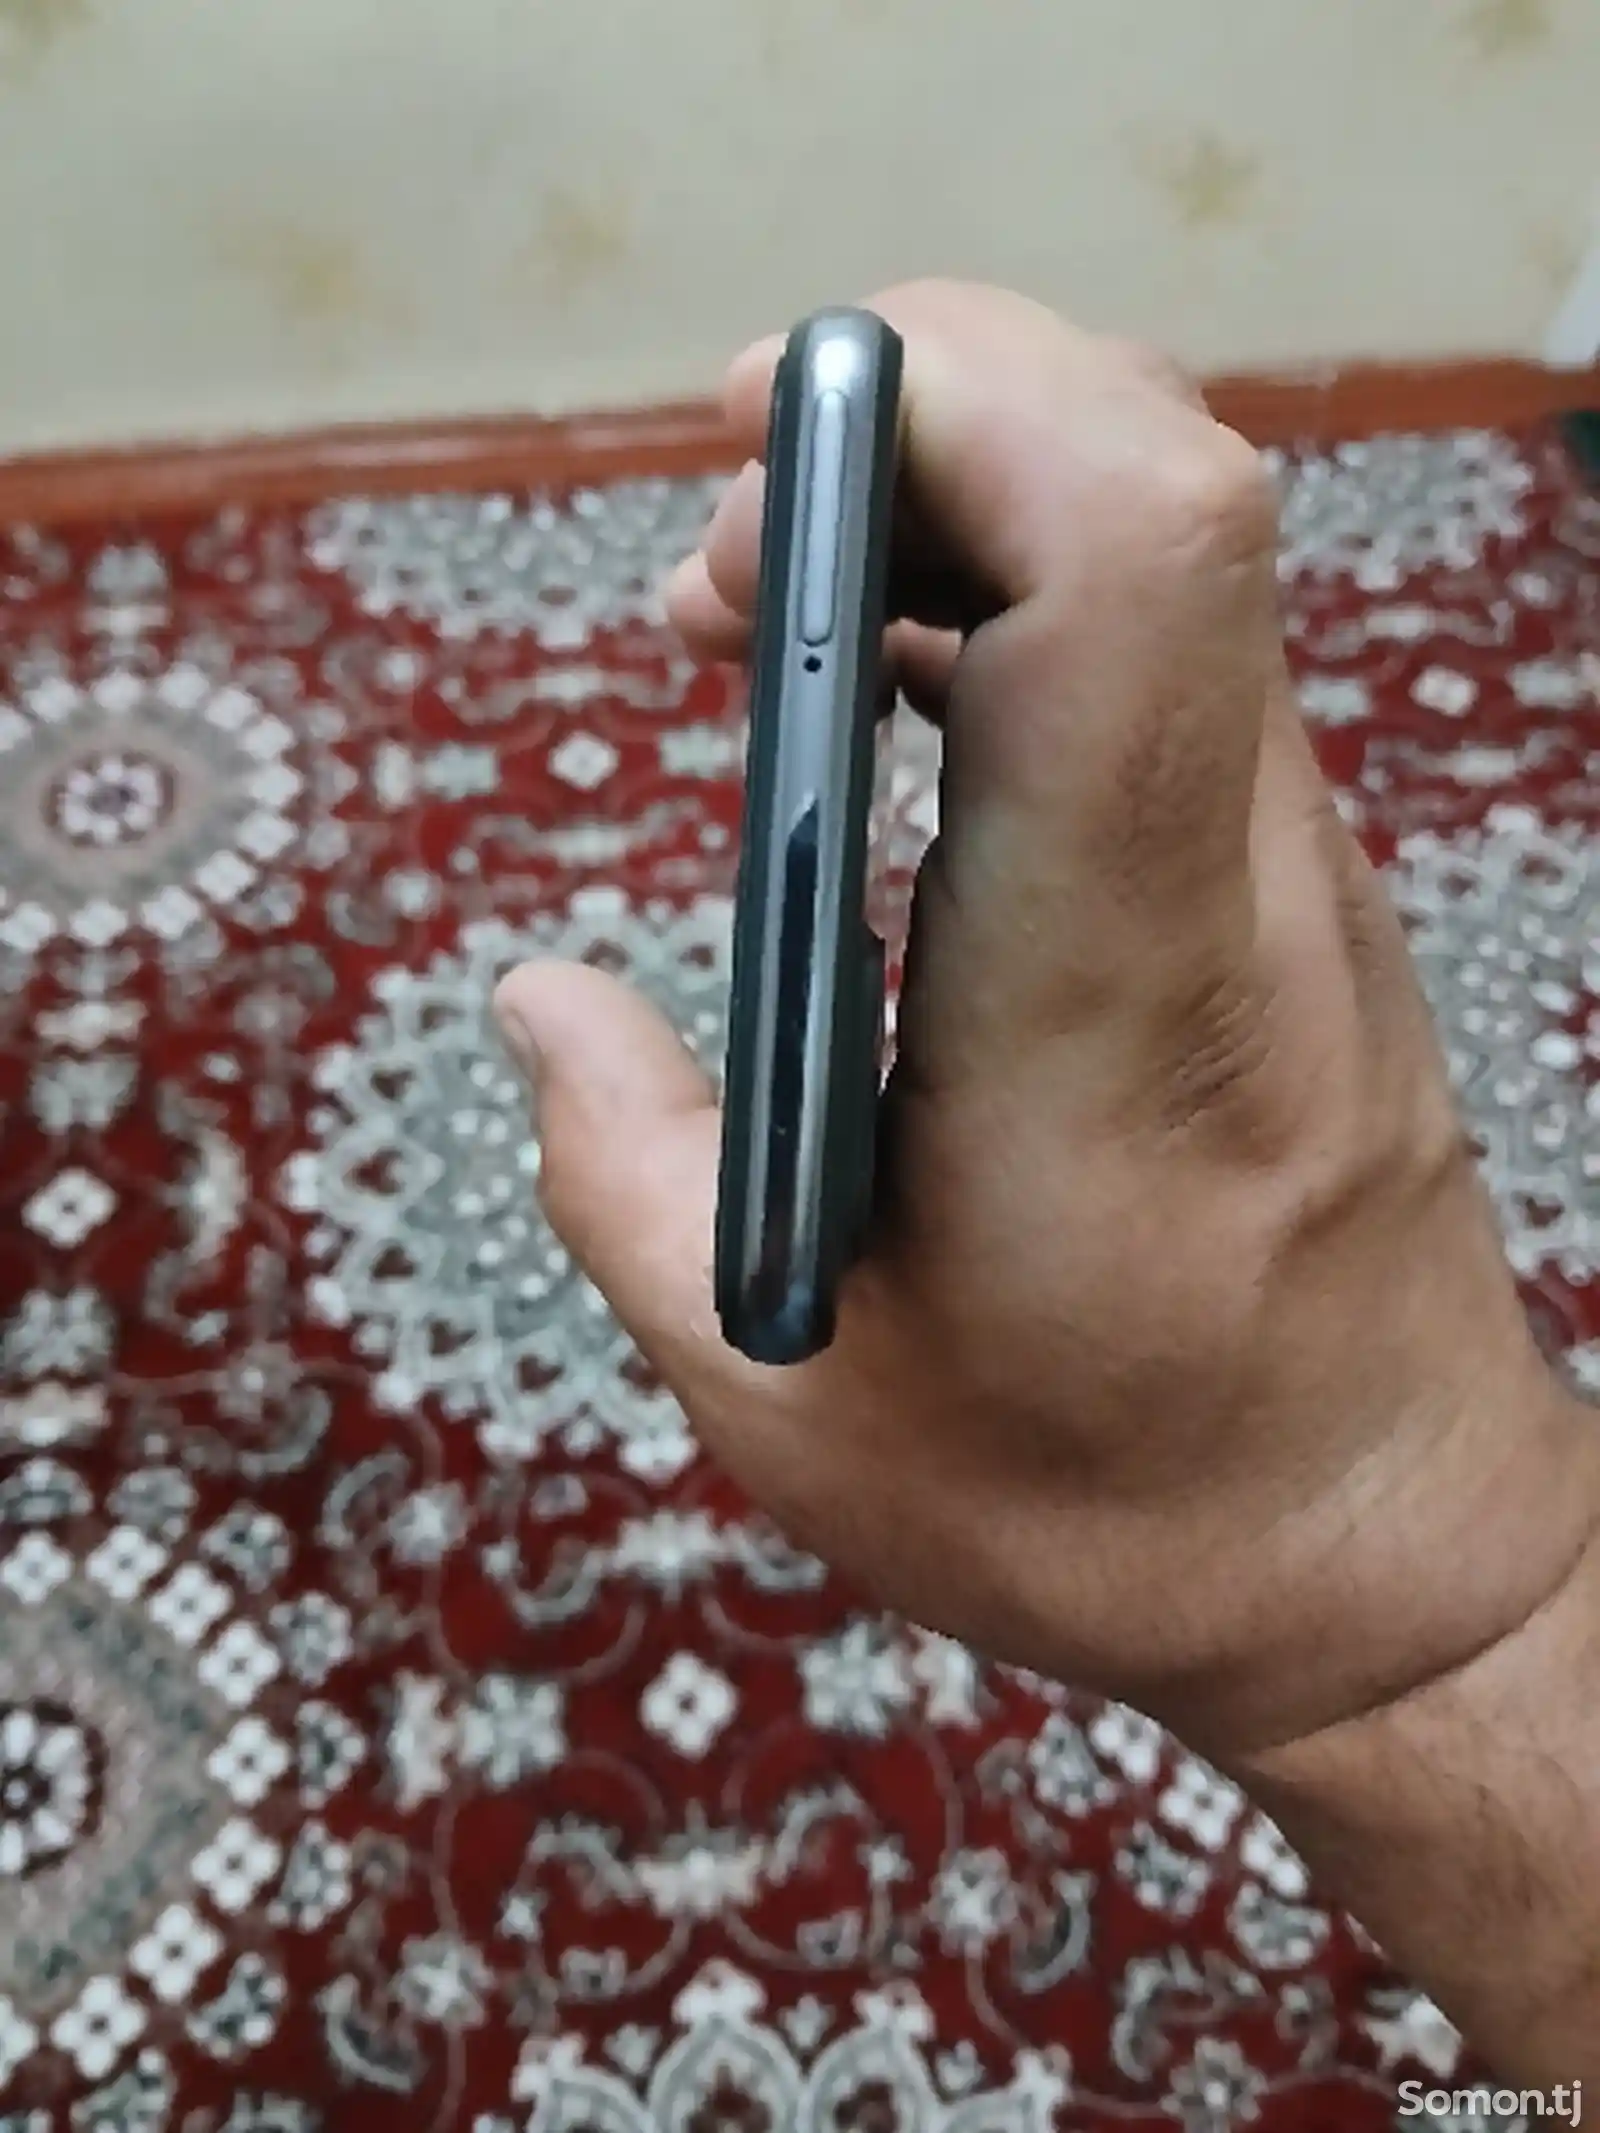 Samsung Galaxy A52-5